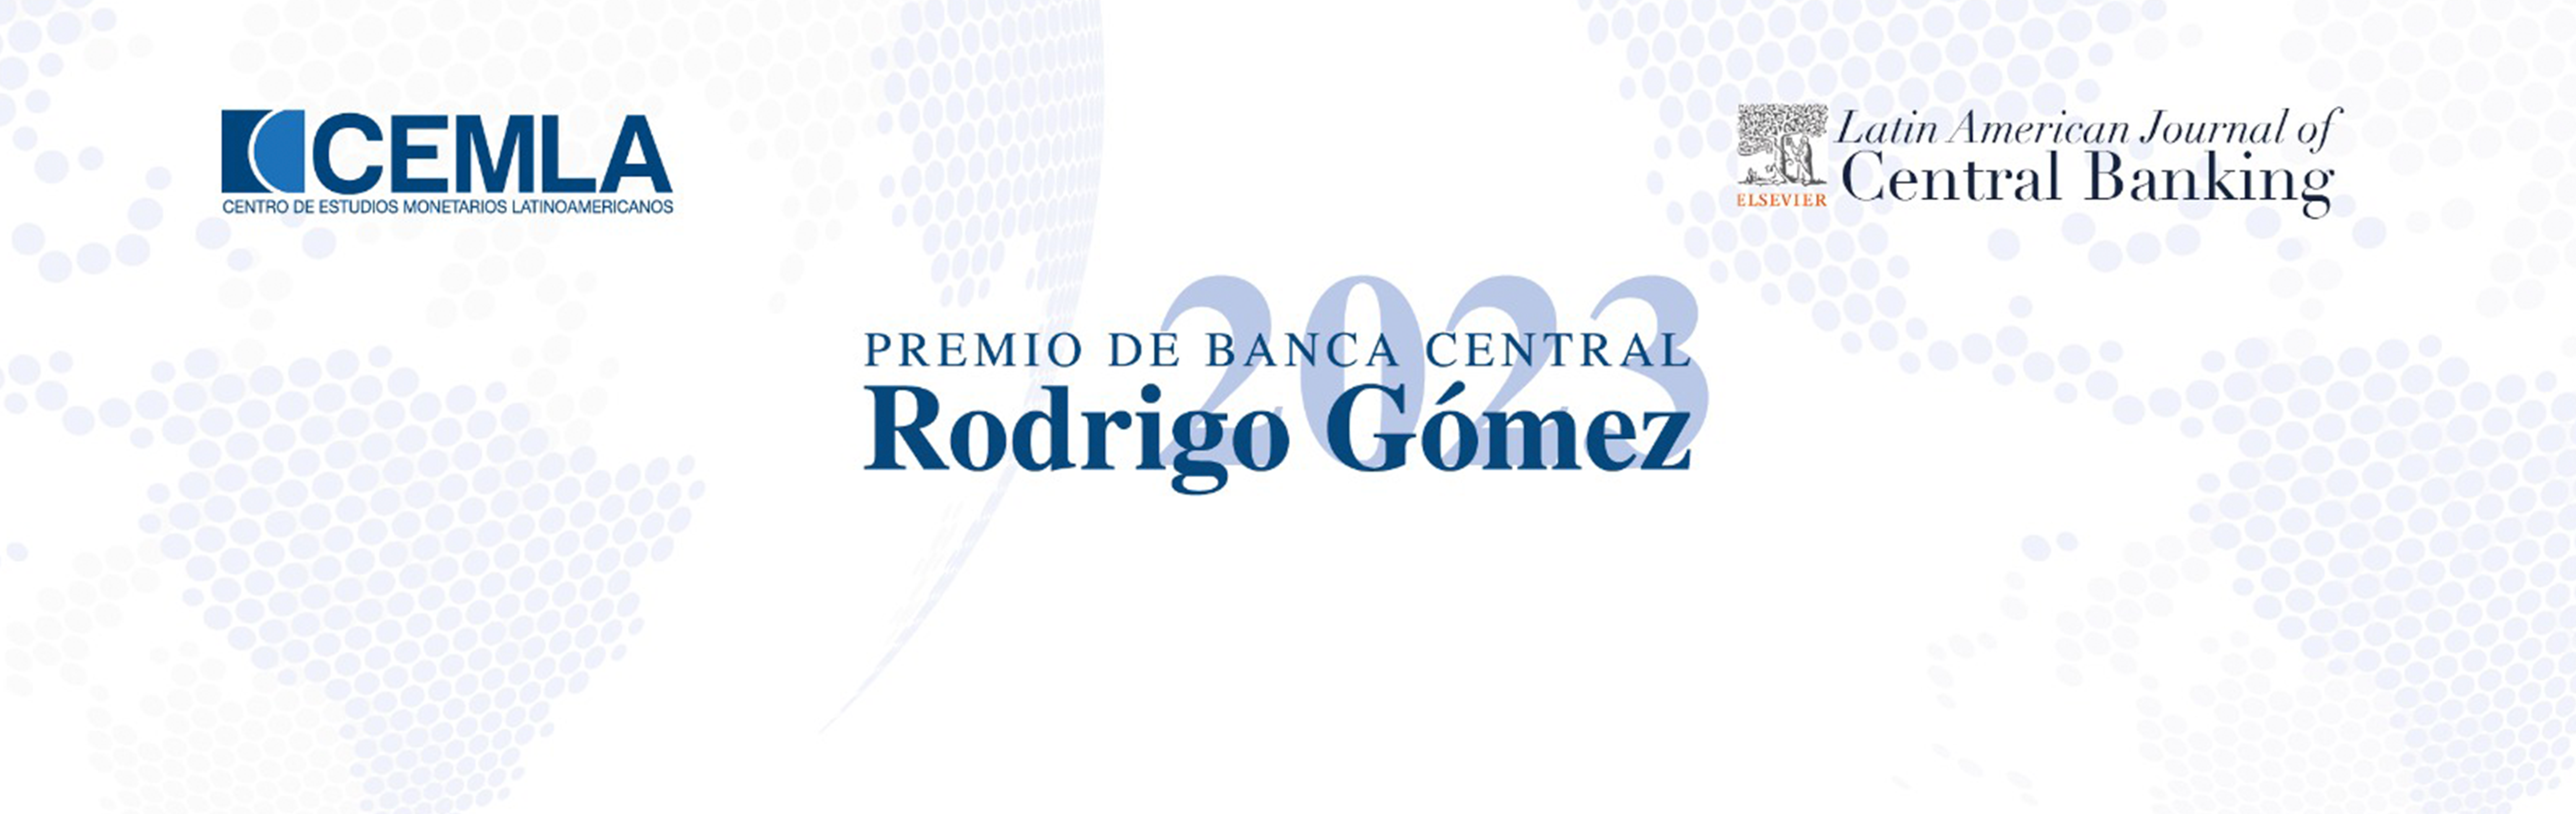 Texto em fundo branco: Premio de Banca Central 2023: Rodrigo Gómez. Logo do CEMLA e do Latin American Journal of Central Banking